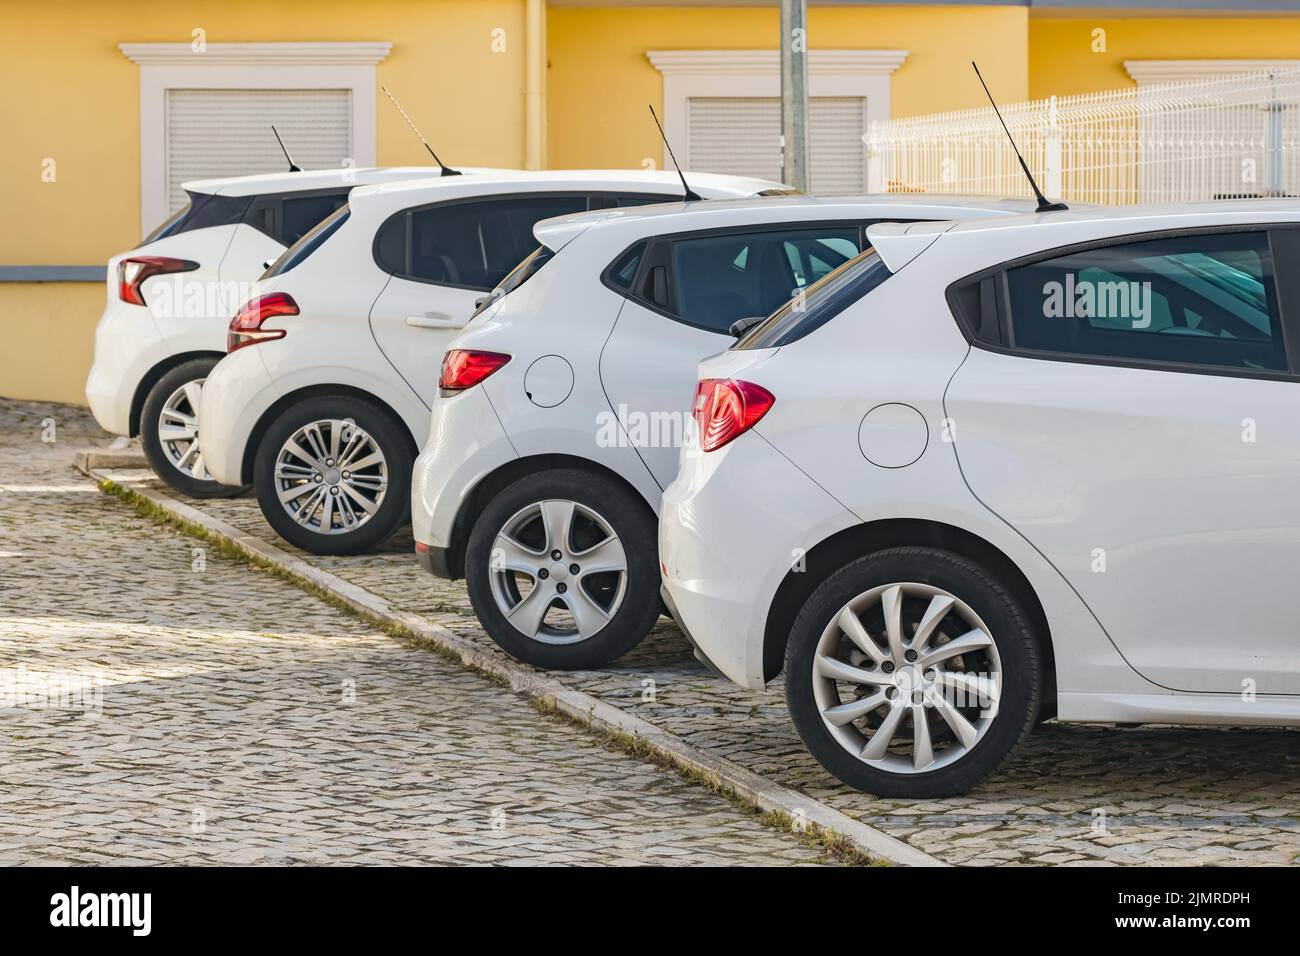 Cuatro coches blancos similares estacionados en la calle en una típica ciudad europea Foto de stock